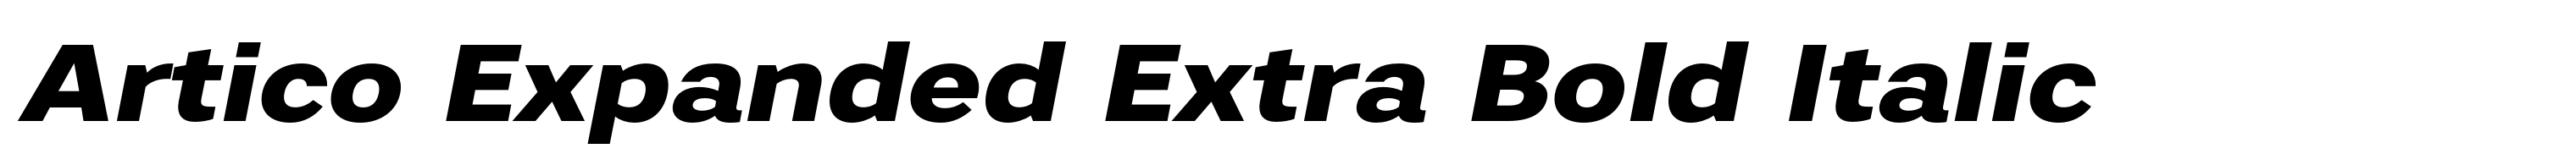 Artico Expanded Extra Bold Italic